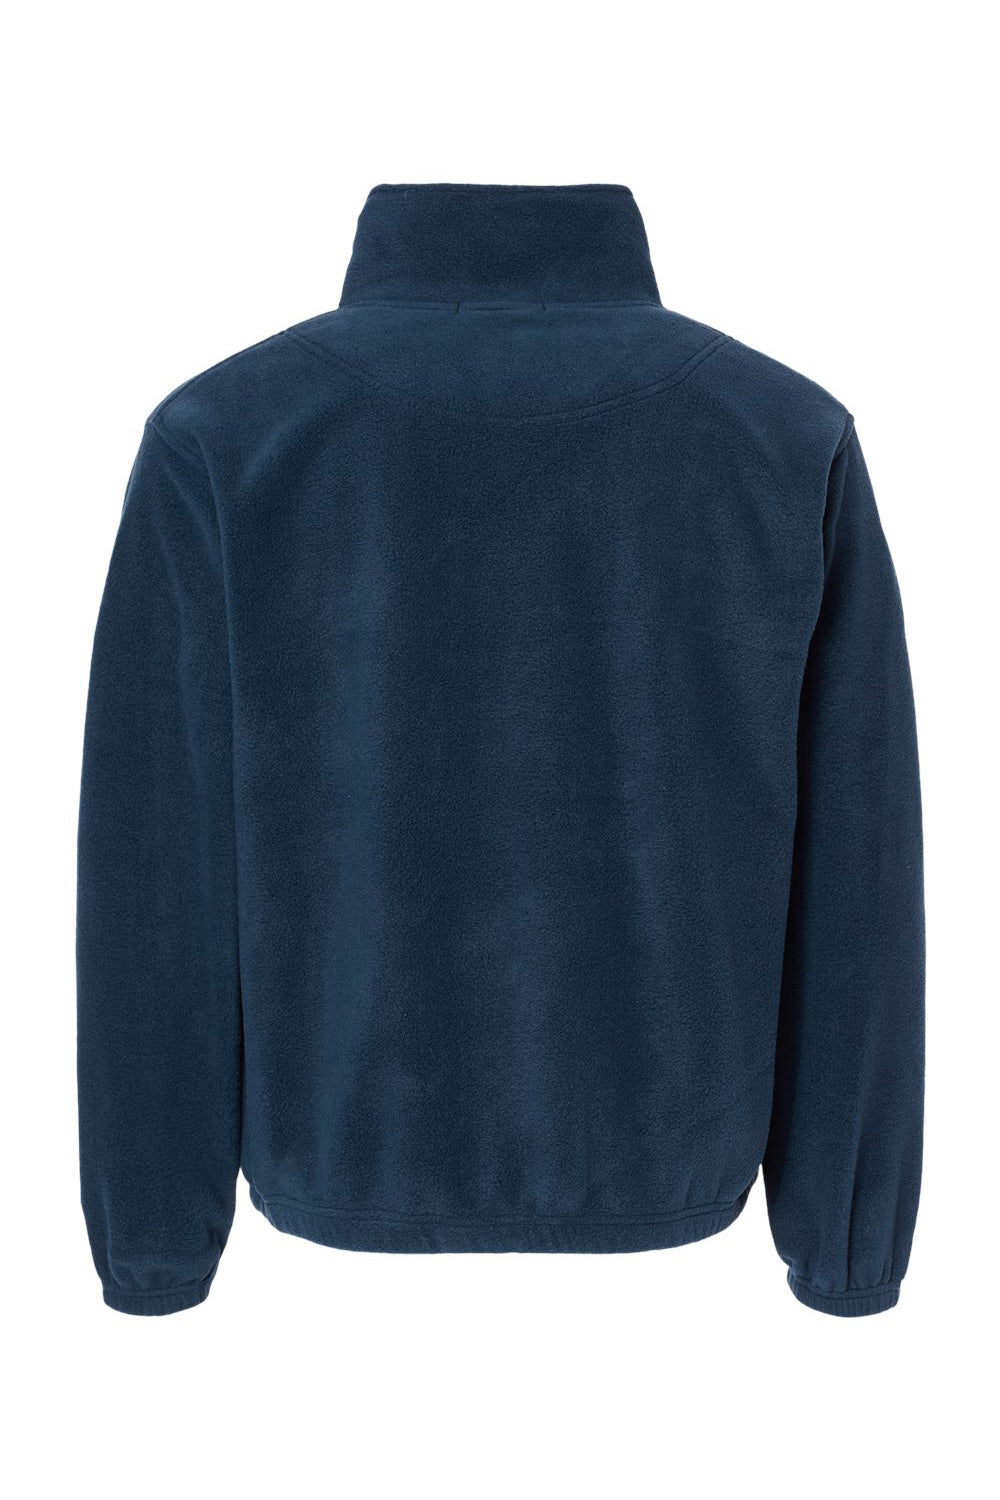 Burnside 3052 Mens Polar Fleece 1/4 Zip Sweatshirt Navy Blue Flat Back